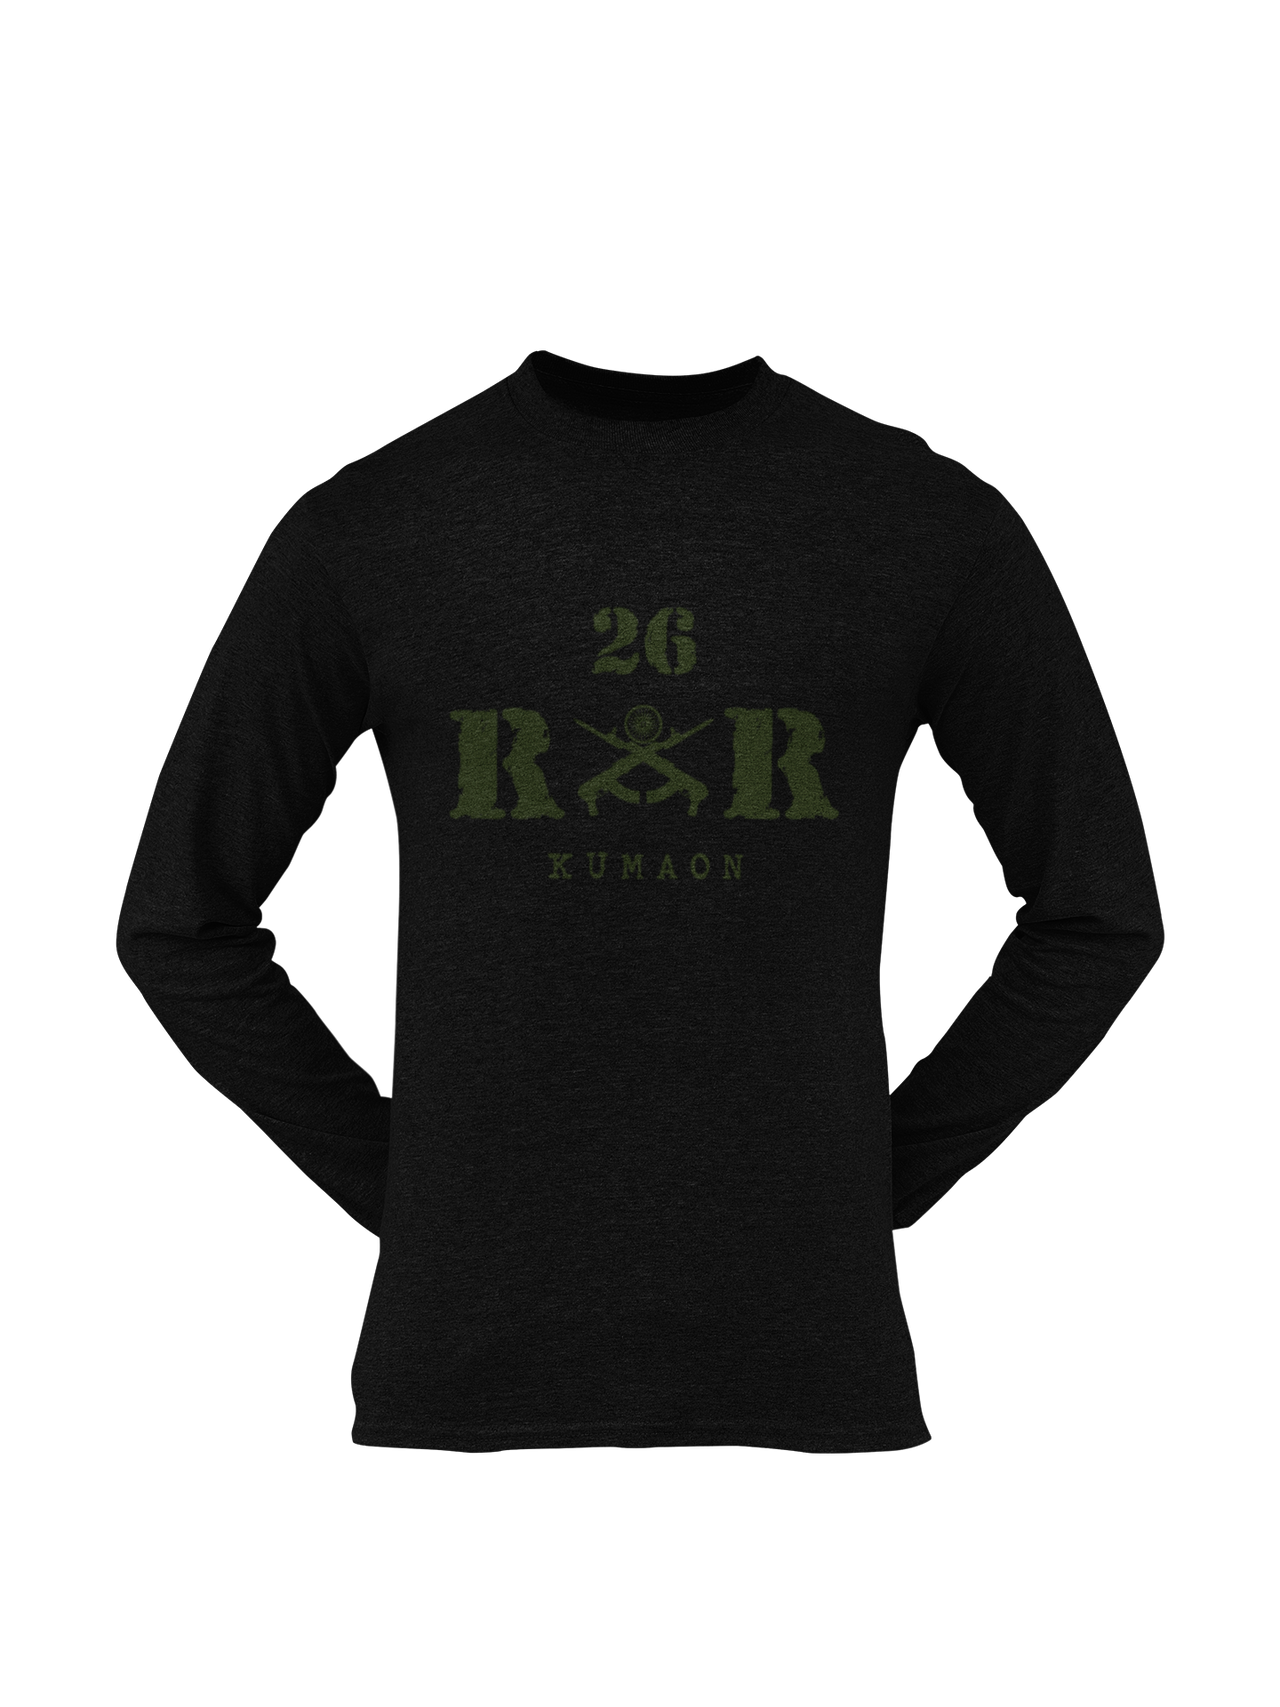 Rashtriya Rifles T-shirt - 26 RR Kumaon (Men)